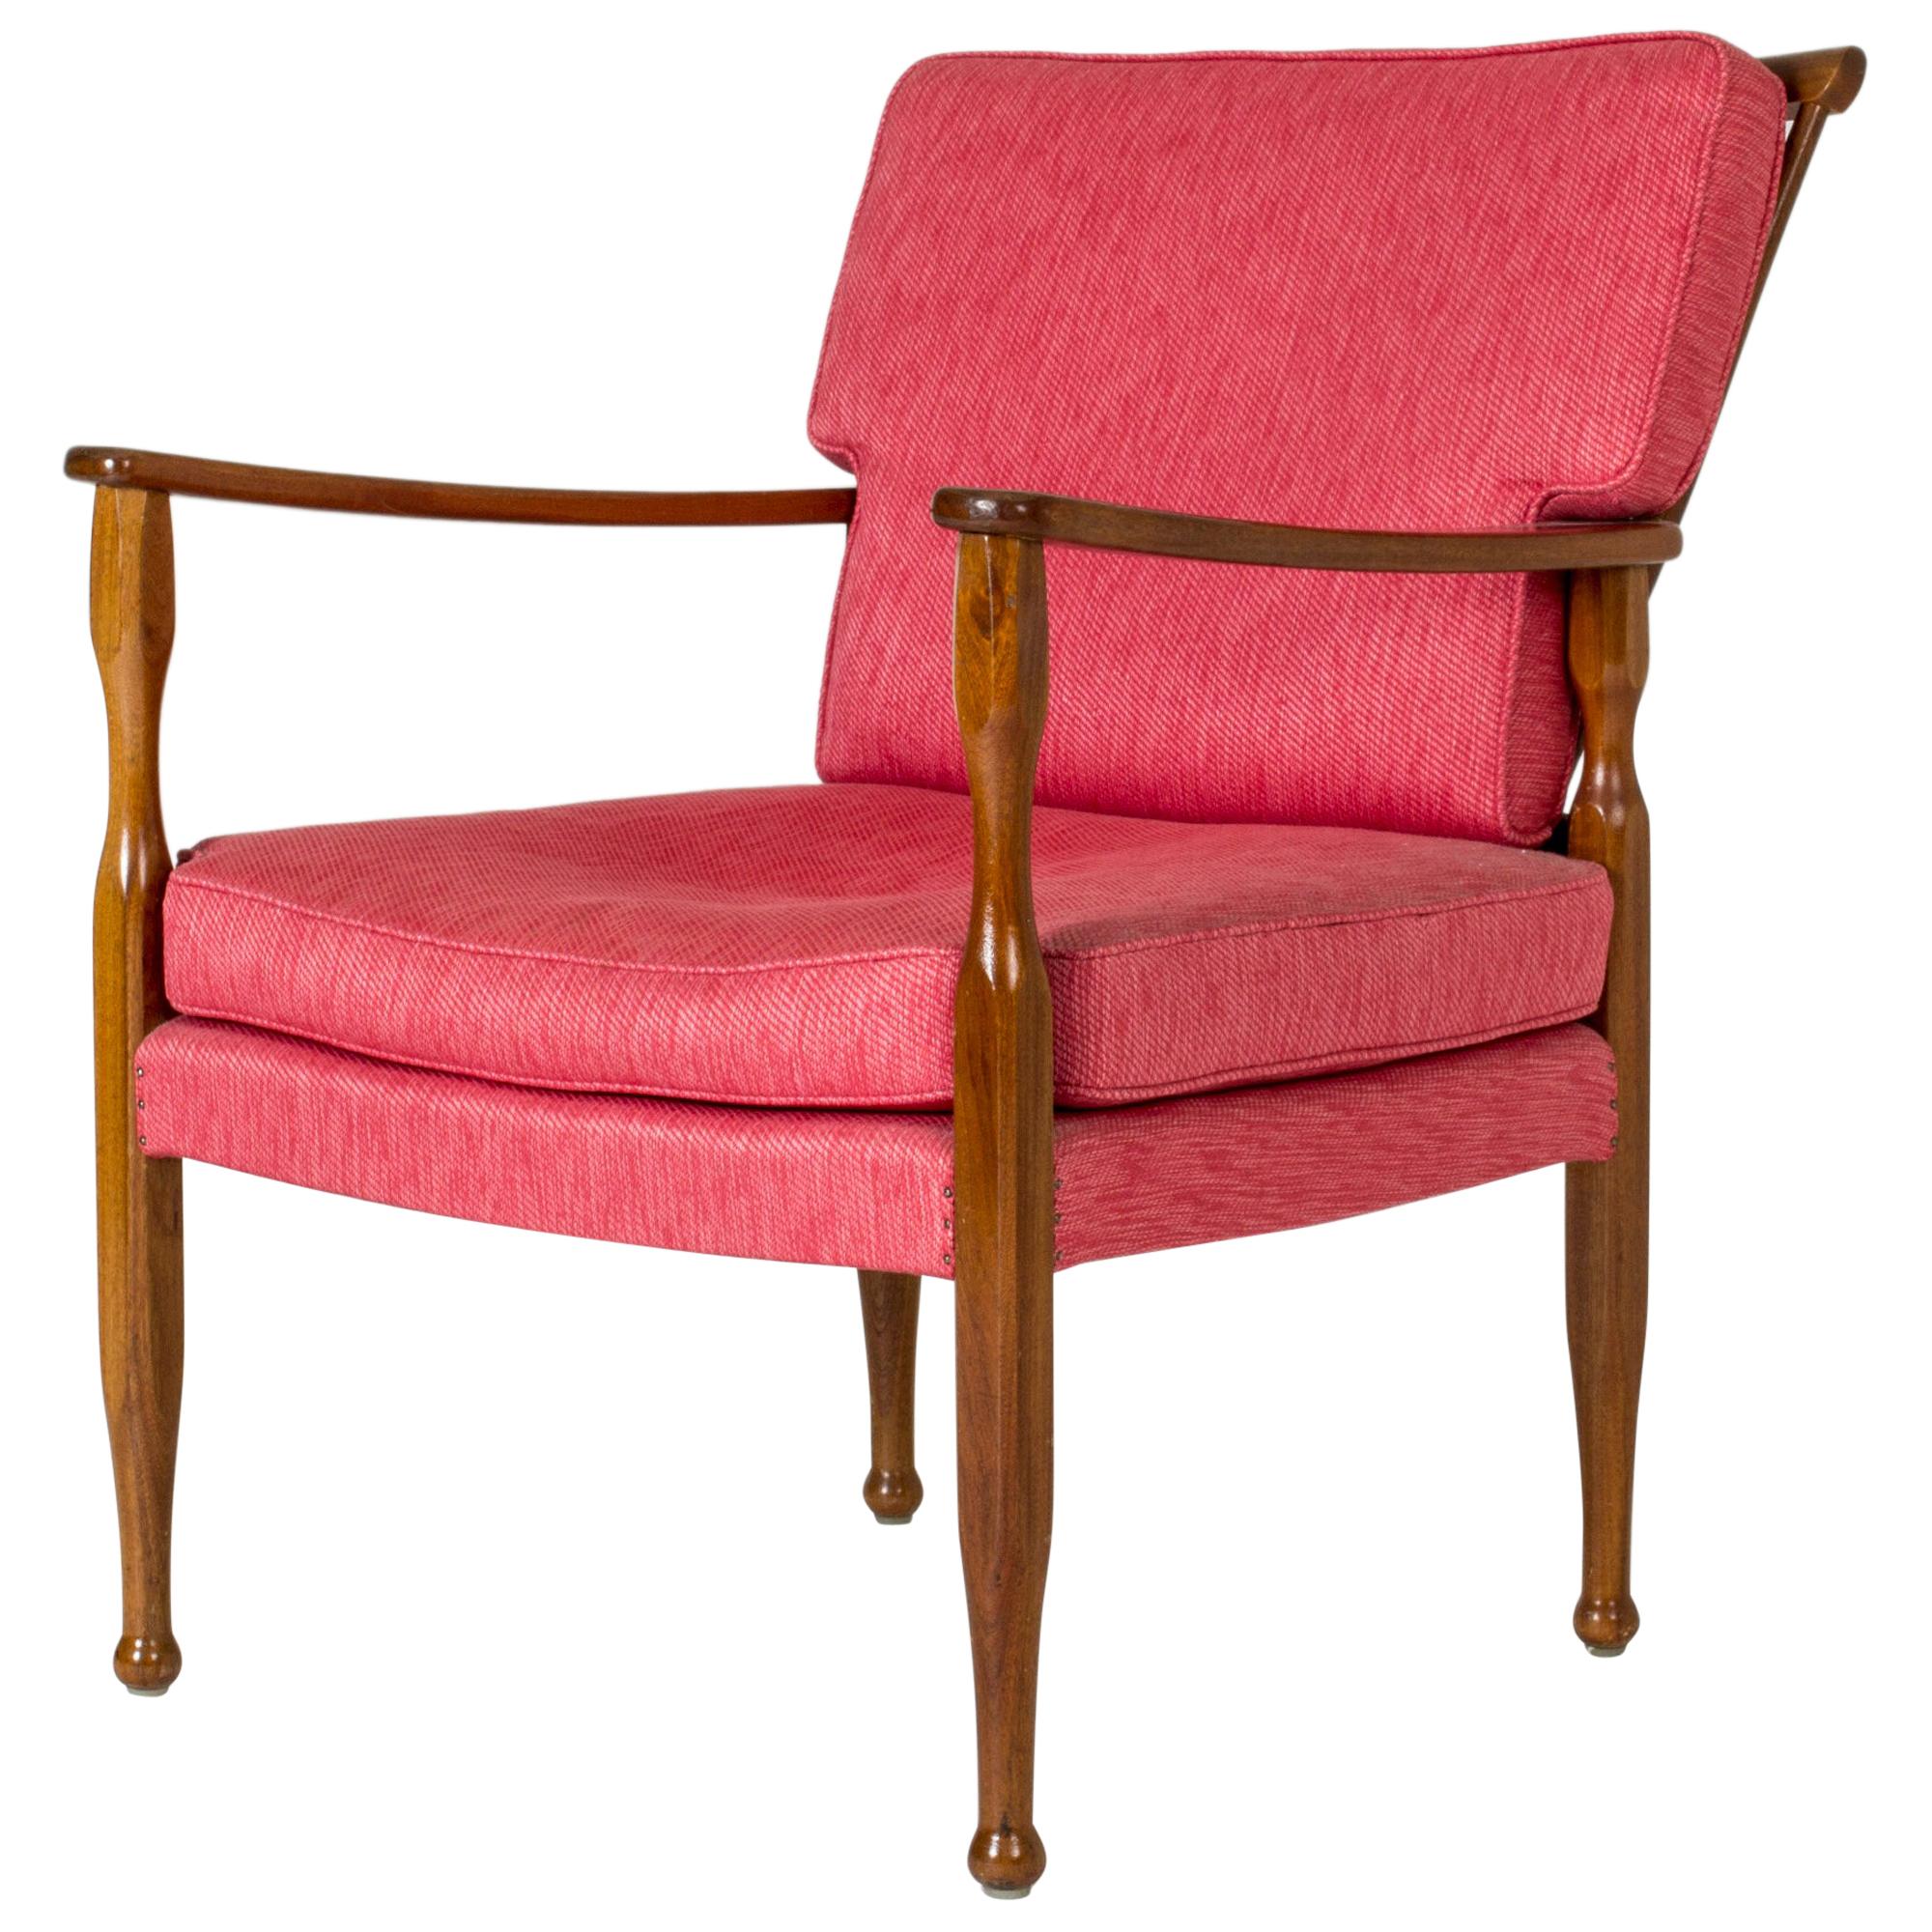 Mahogany Lounge Chair by Josef Frank for Svenskt Tenn, Sweden, 1950s